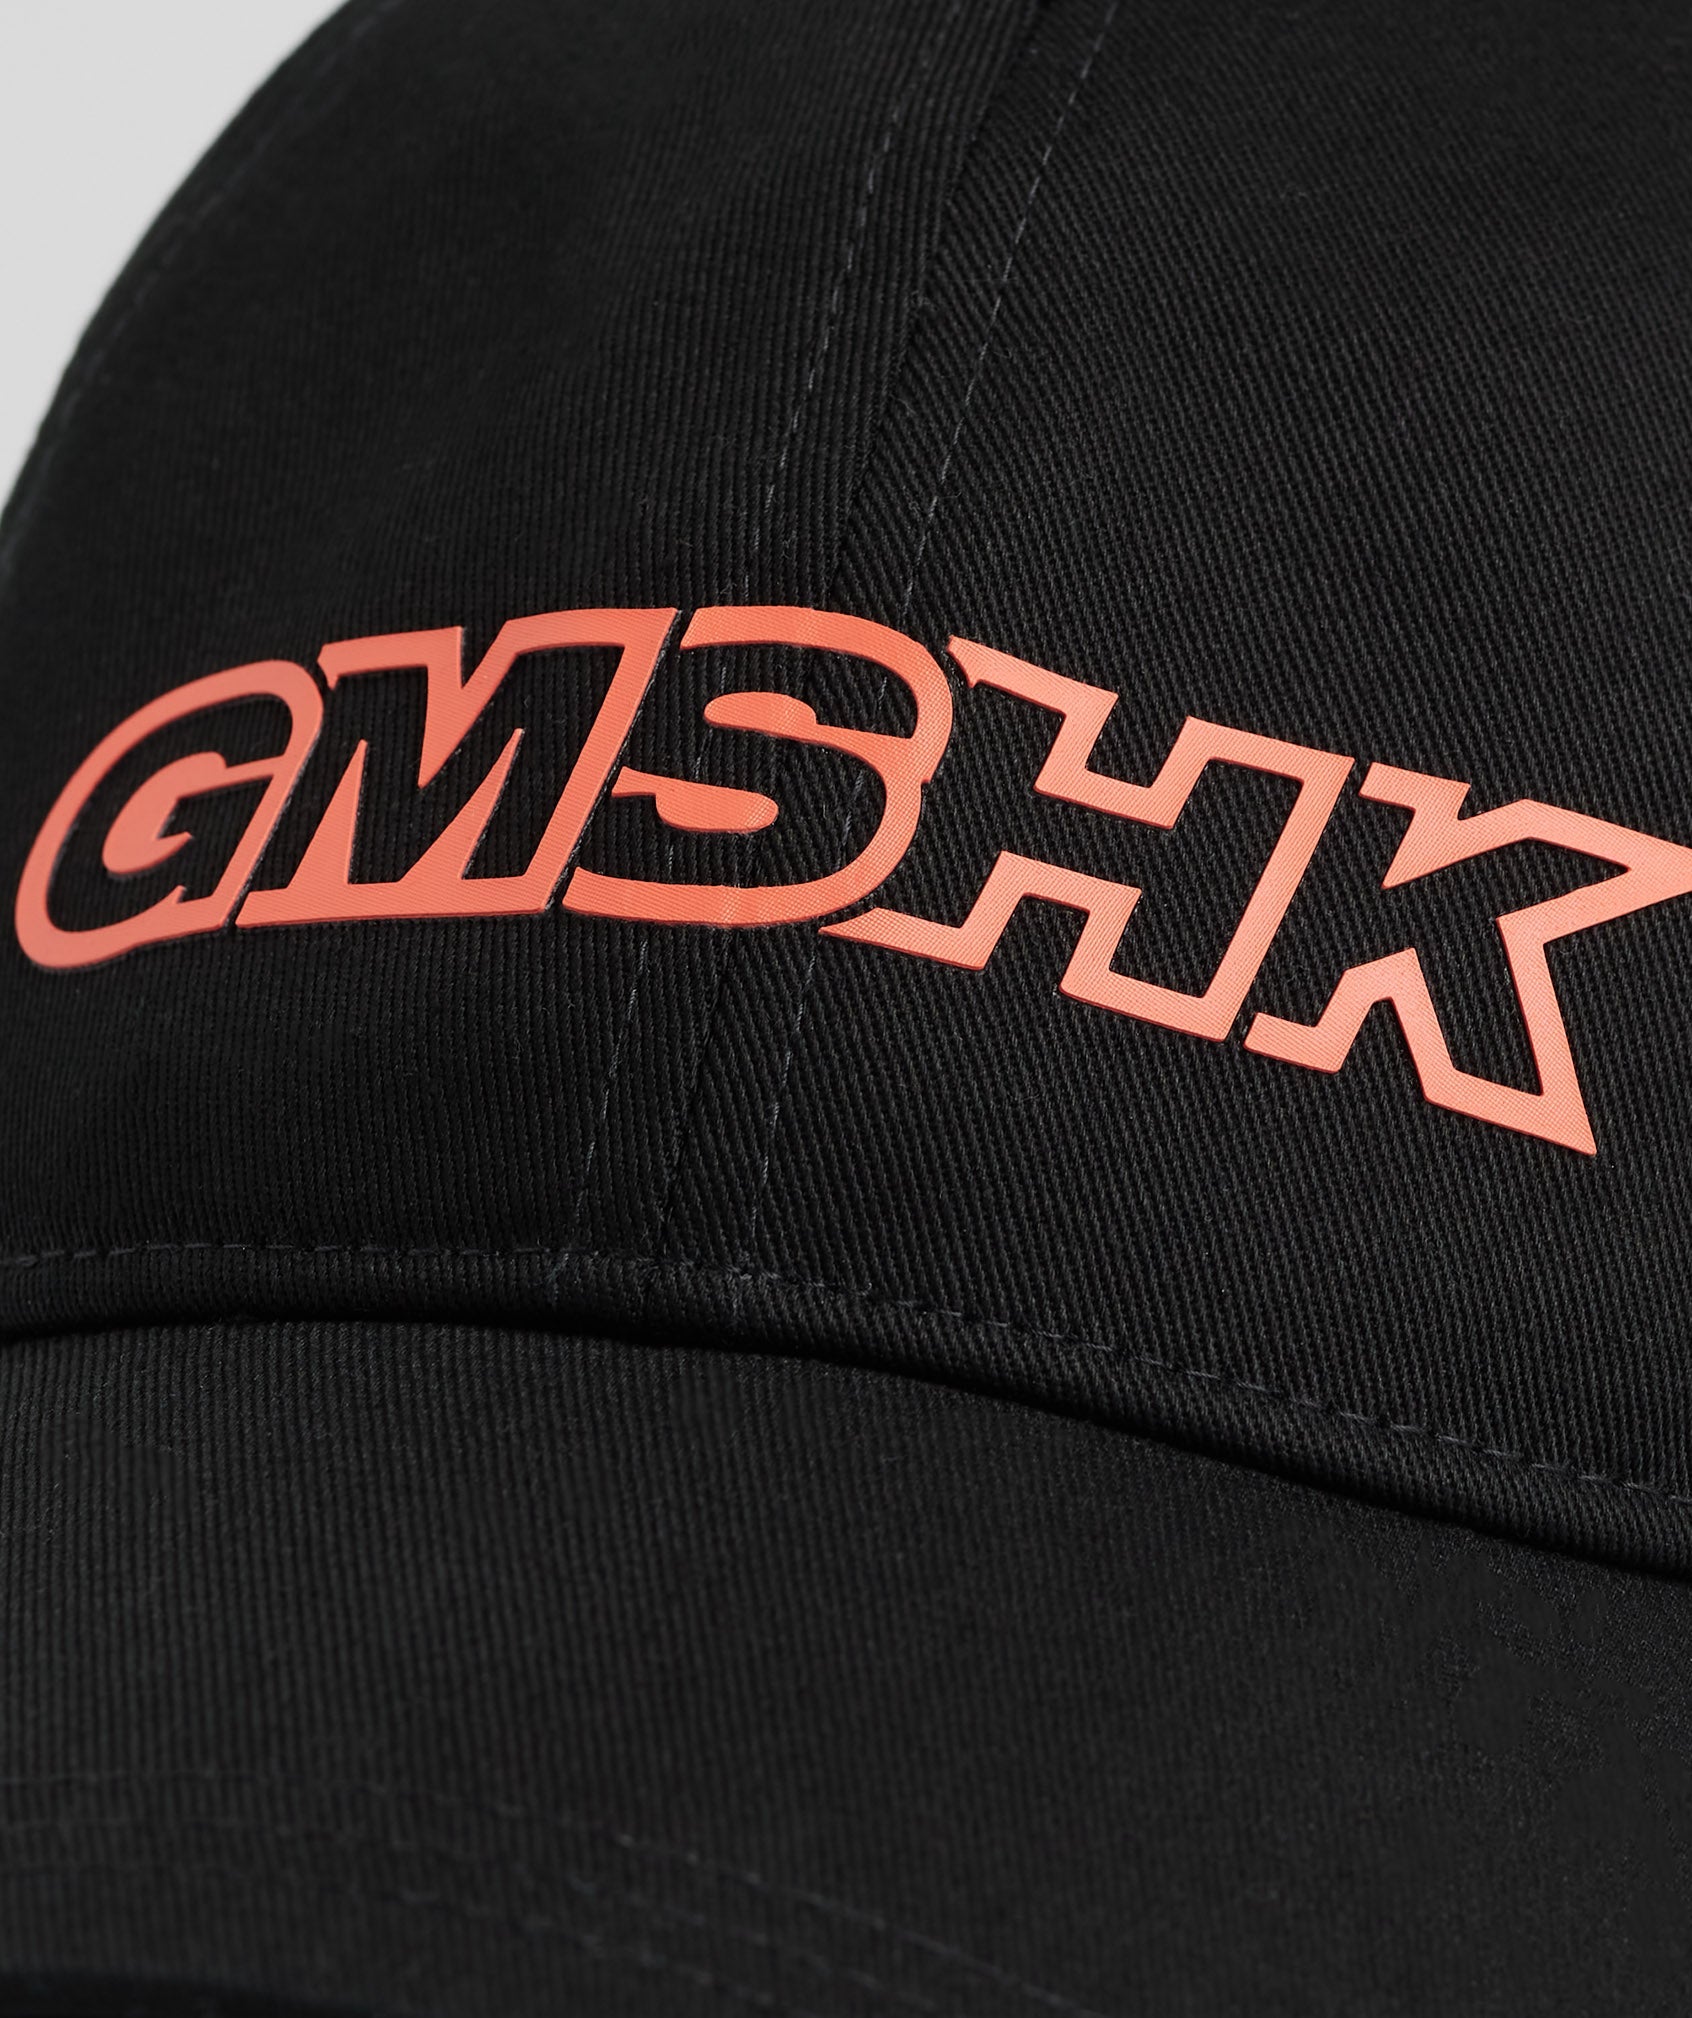 GMSHK Baseball Cap in Black/Solstice Orange - view 4